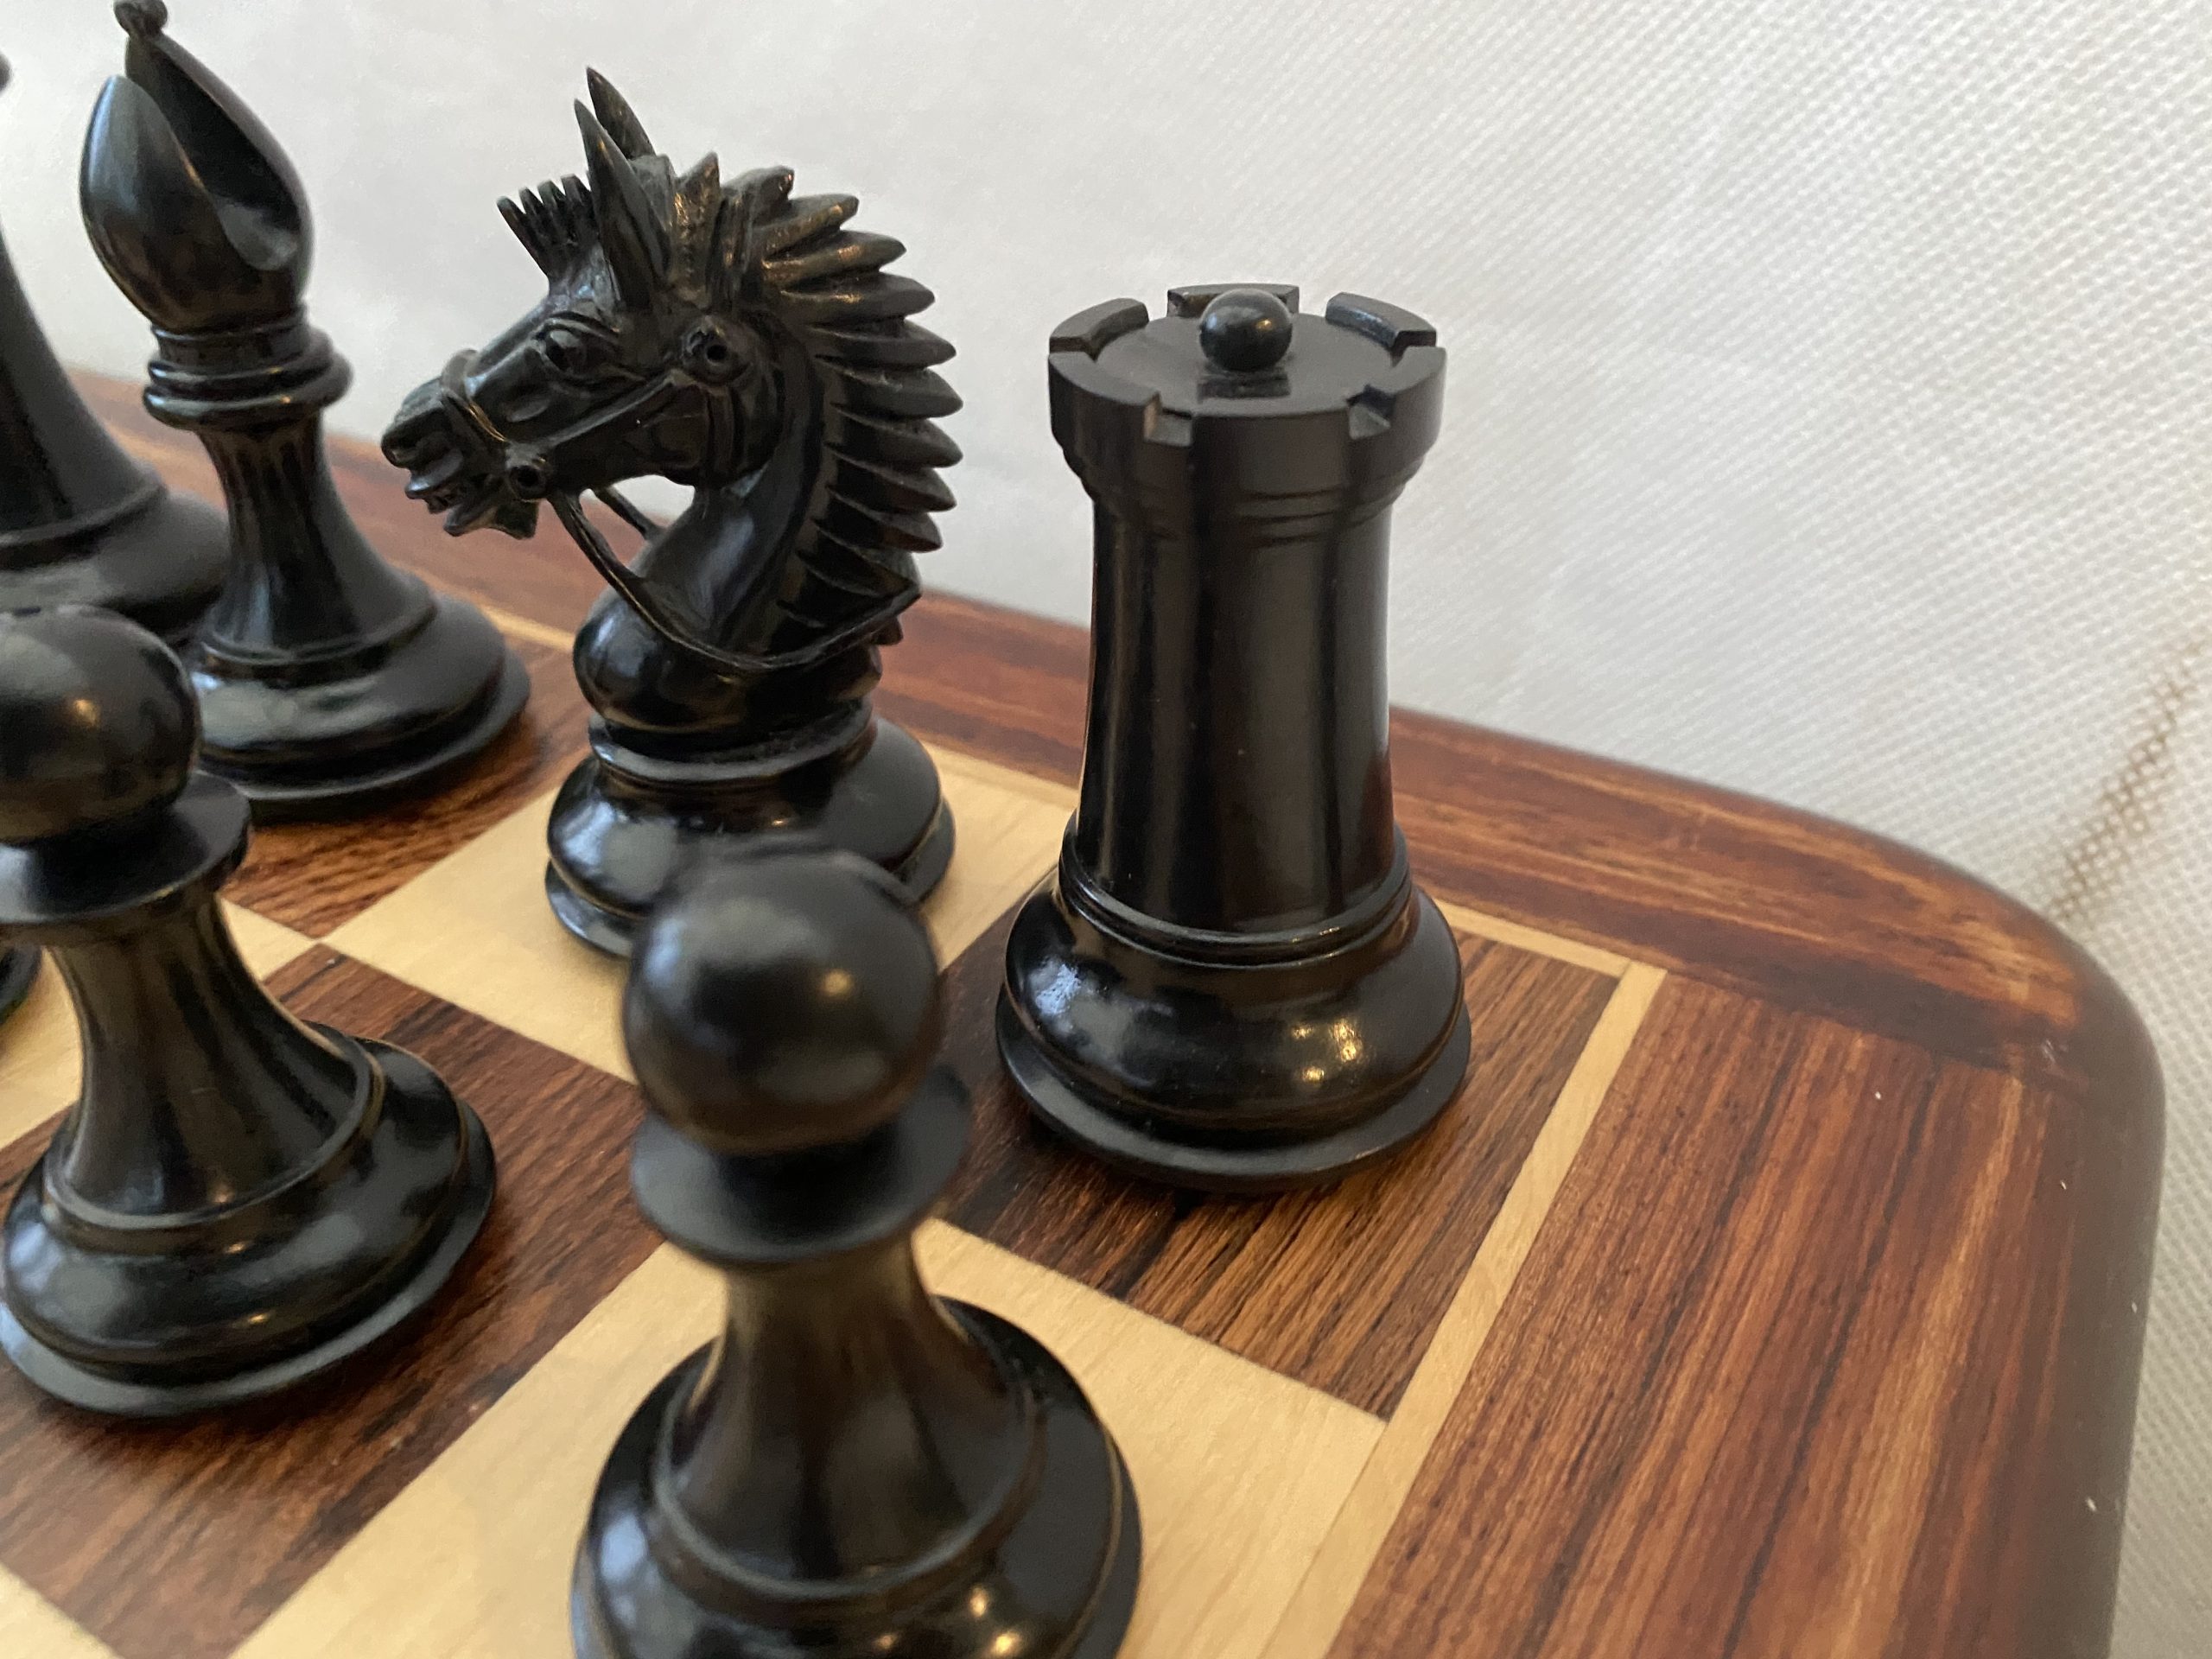 The Highgrove Briarwood Luxury Chess Set